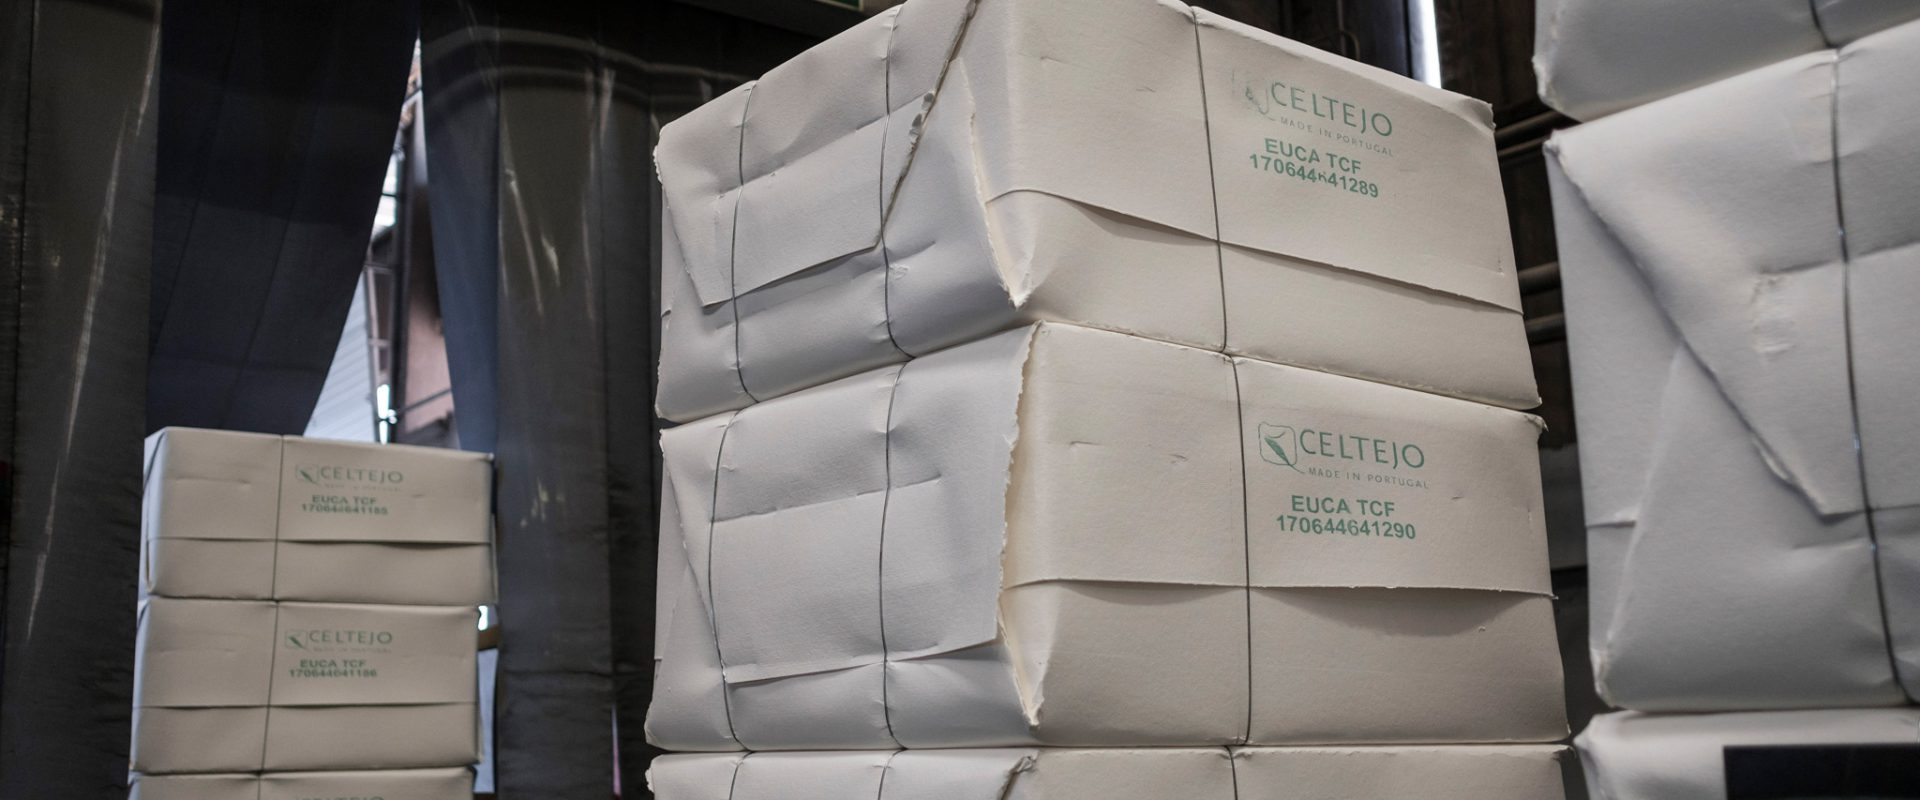 Nos primeiros três meses do ano, a procura de pastas hardwood alcançou os 8,2 milhões de toneladas